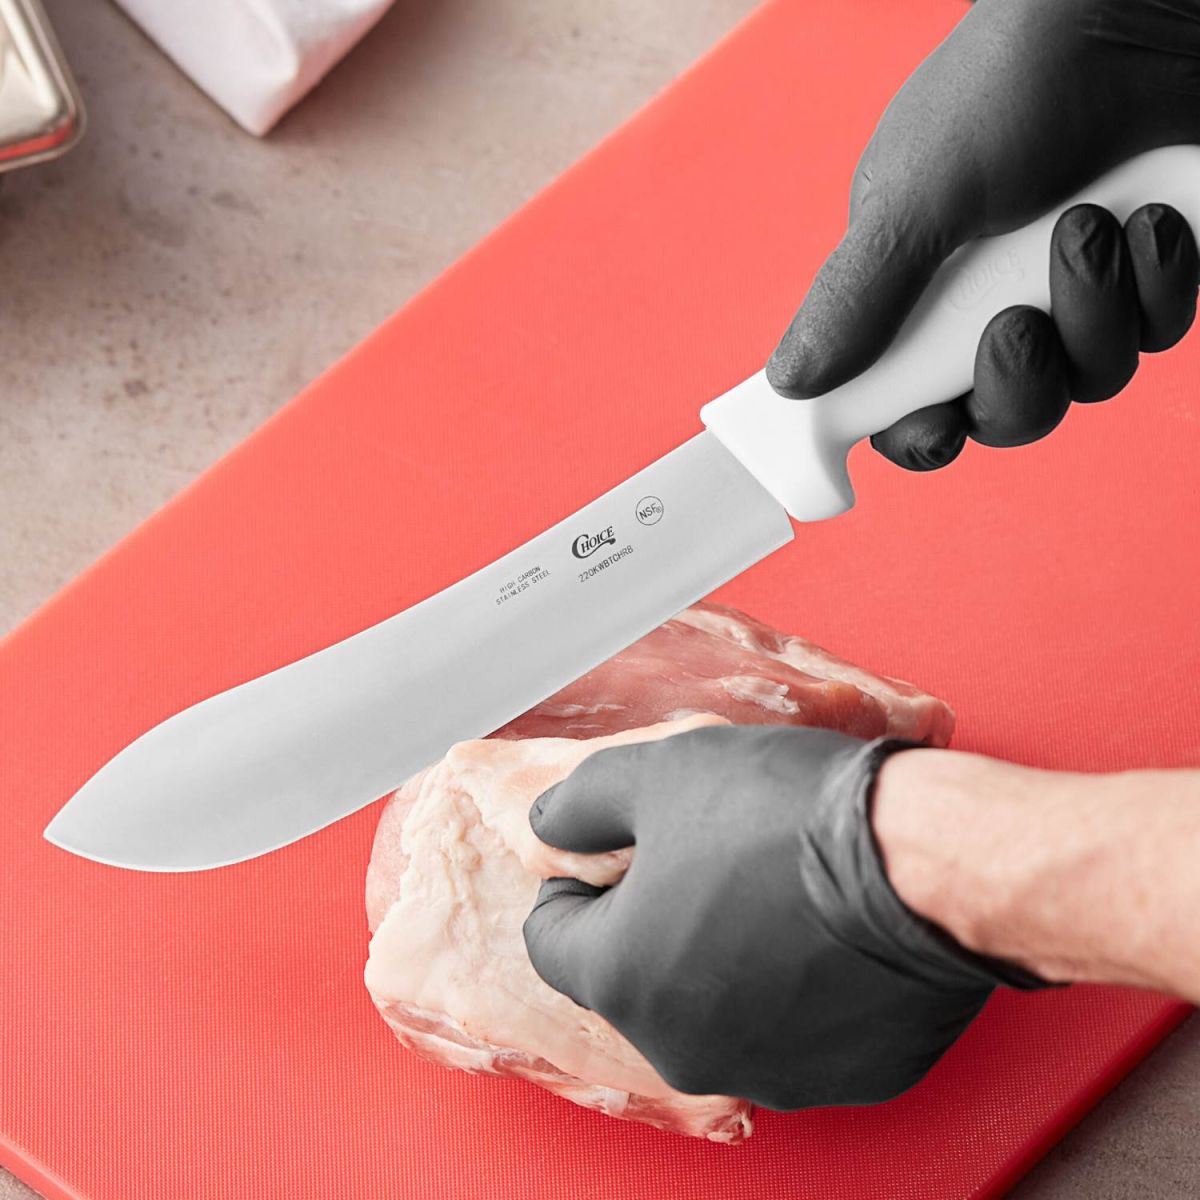 Bạn nên kiểm tra lưỡi dao để đảm bảo các lát cắt của bạn trơn tru và sạch sẽ.